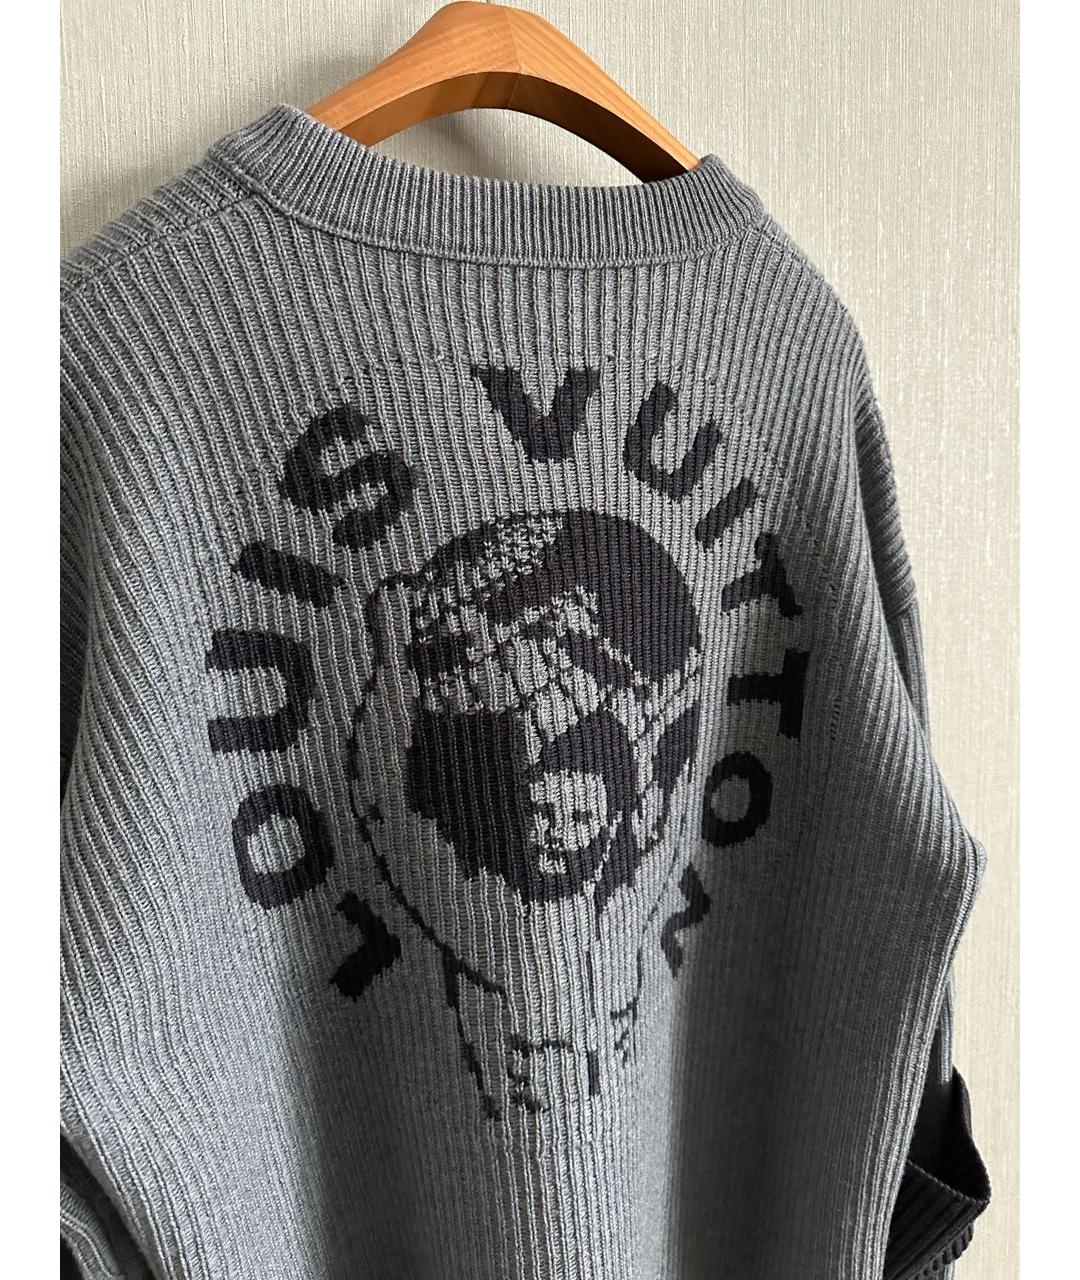 LOUIS VUITTON PRE-OWNED Серый шерстяной джемпер / свитер, фото 3